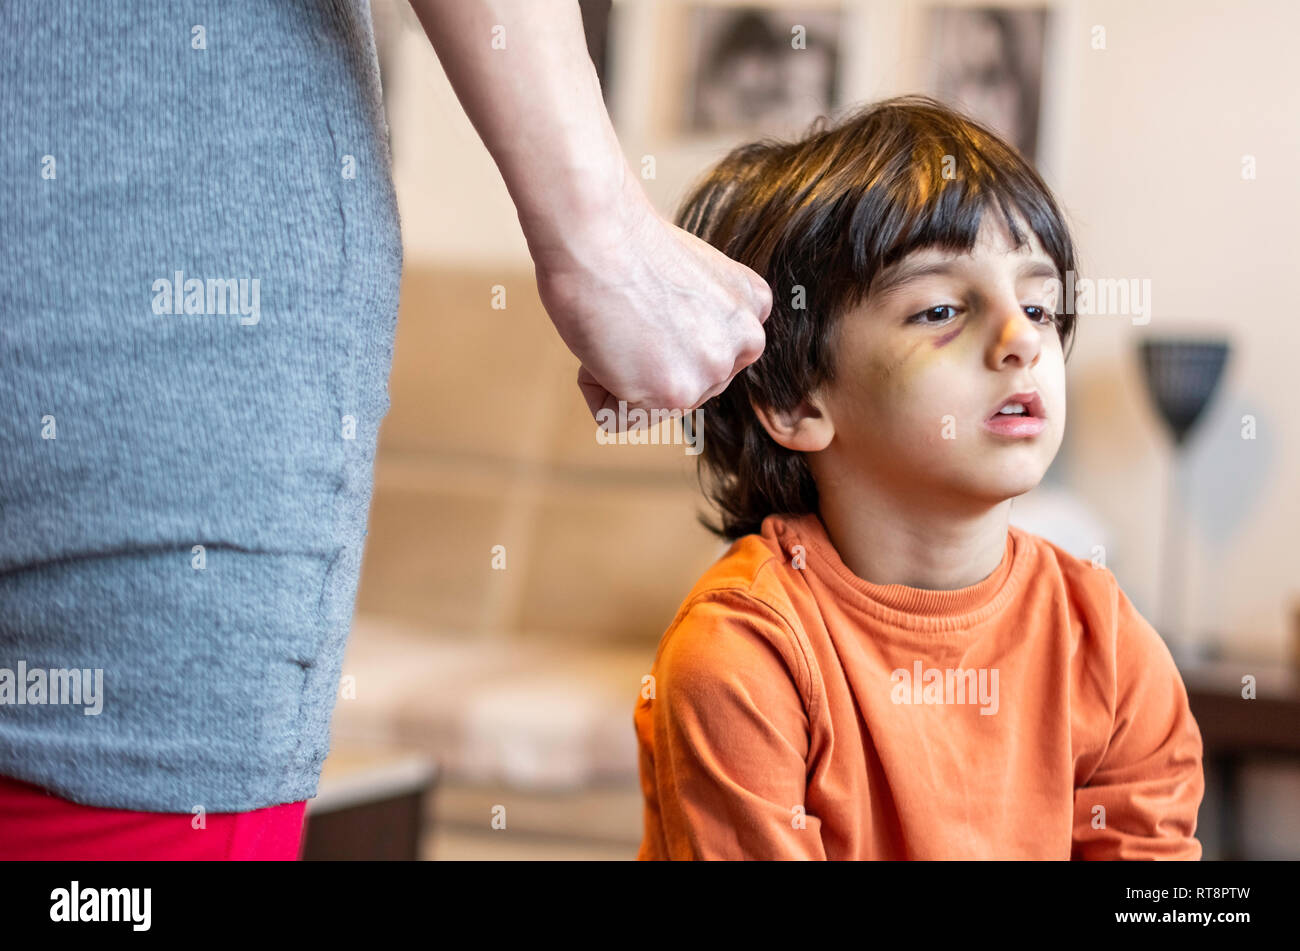 Kind missbraucht Konzept Familie Gewalt und Aggression - Kinder missbraucht und erschrecken - Auge Bruise Kind Eltern Missbrauch Konzept Stockfoto